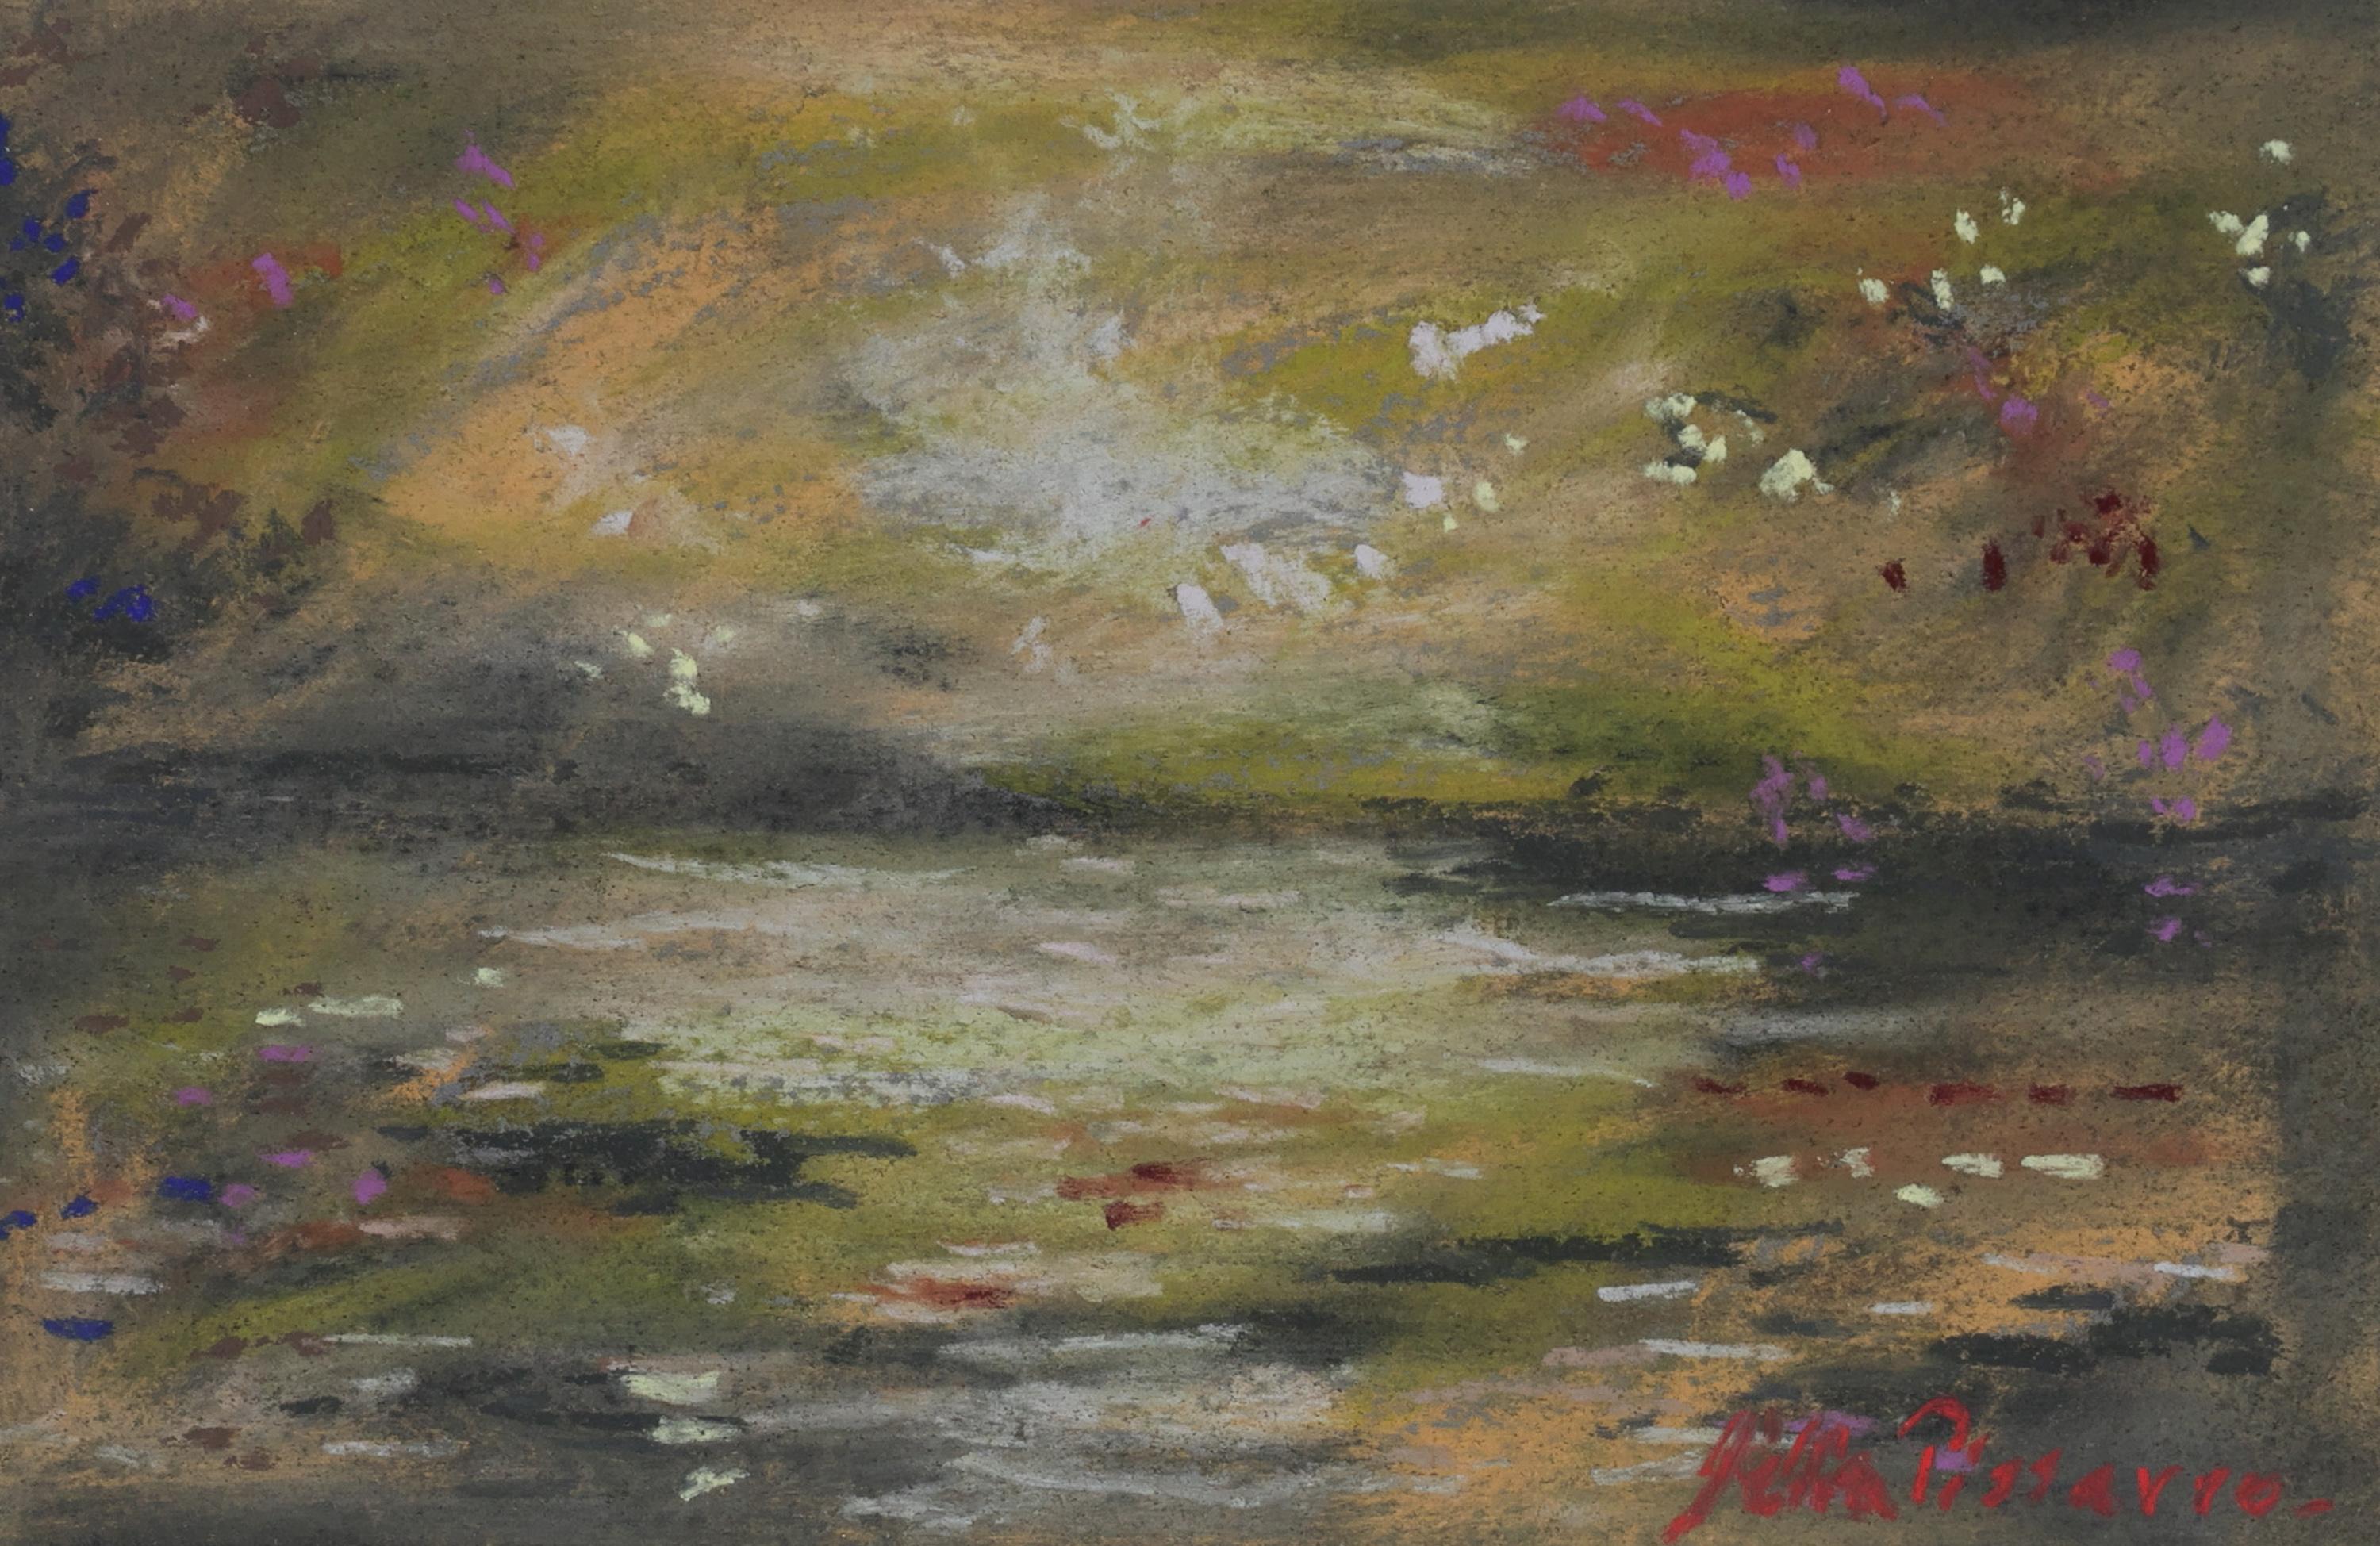 Landscape Art Lelia Pissarro - La Rivière de Dotahn de Lélia Pissarro - Pastel sur papier